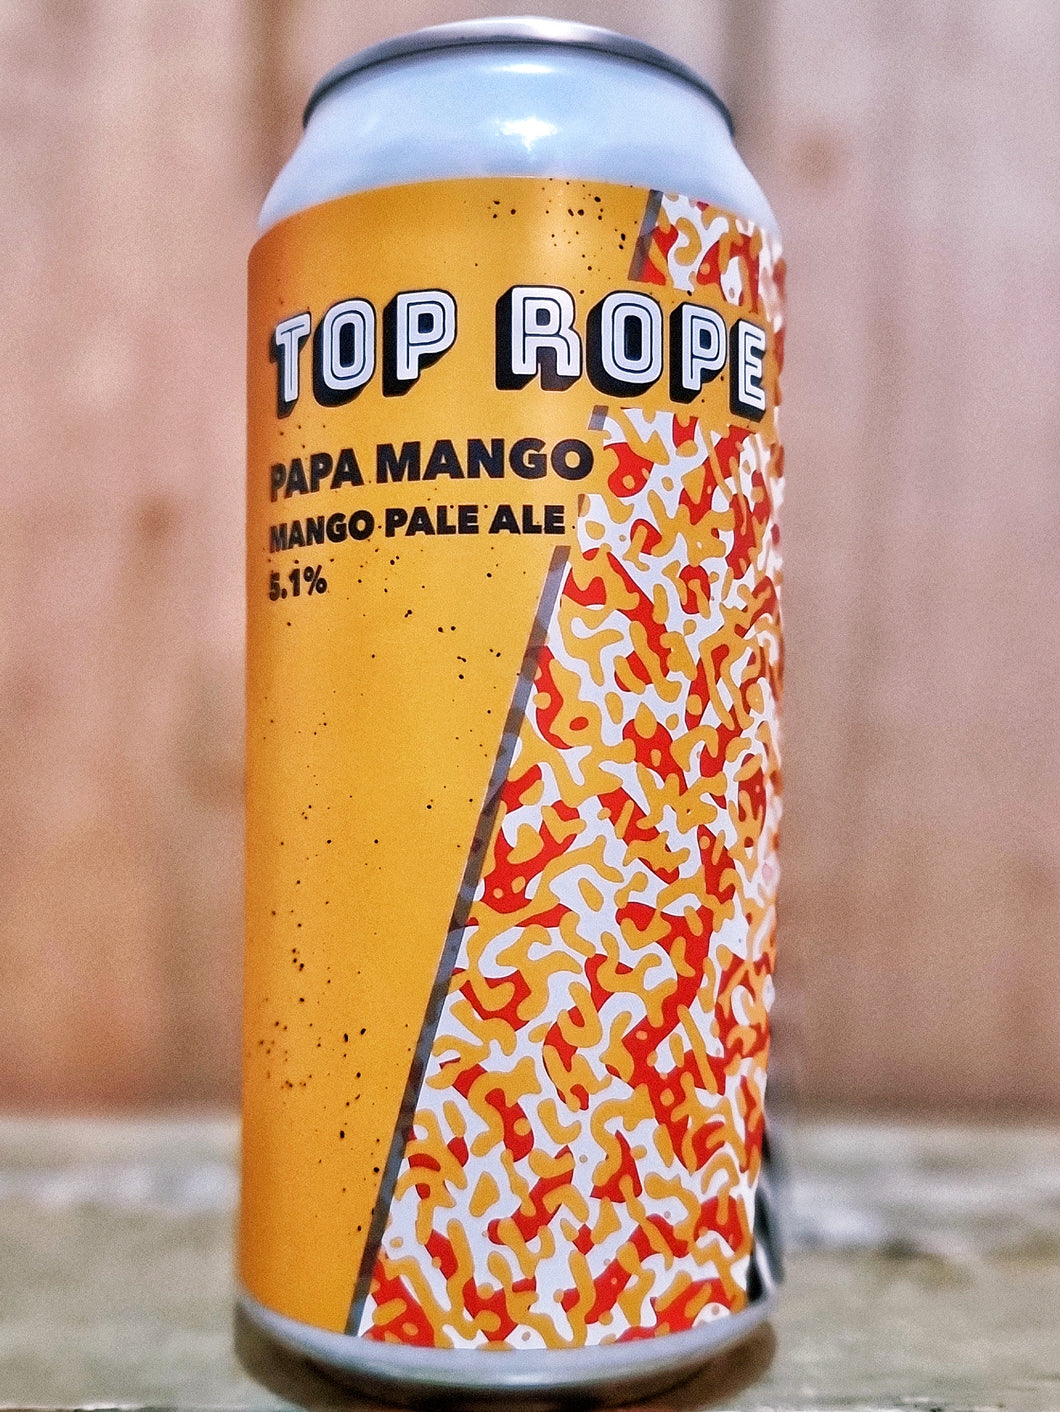 Top Rope	- Papa Mango